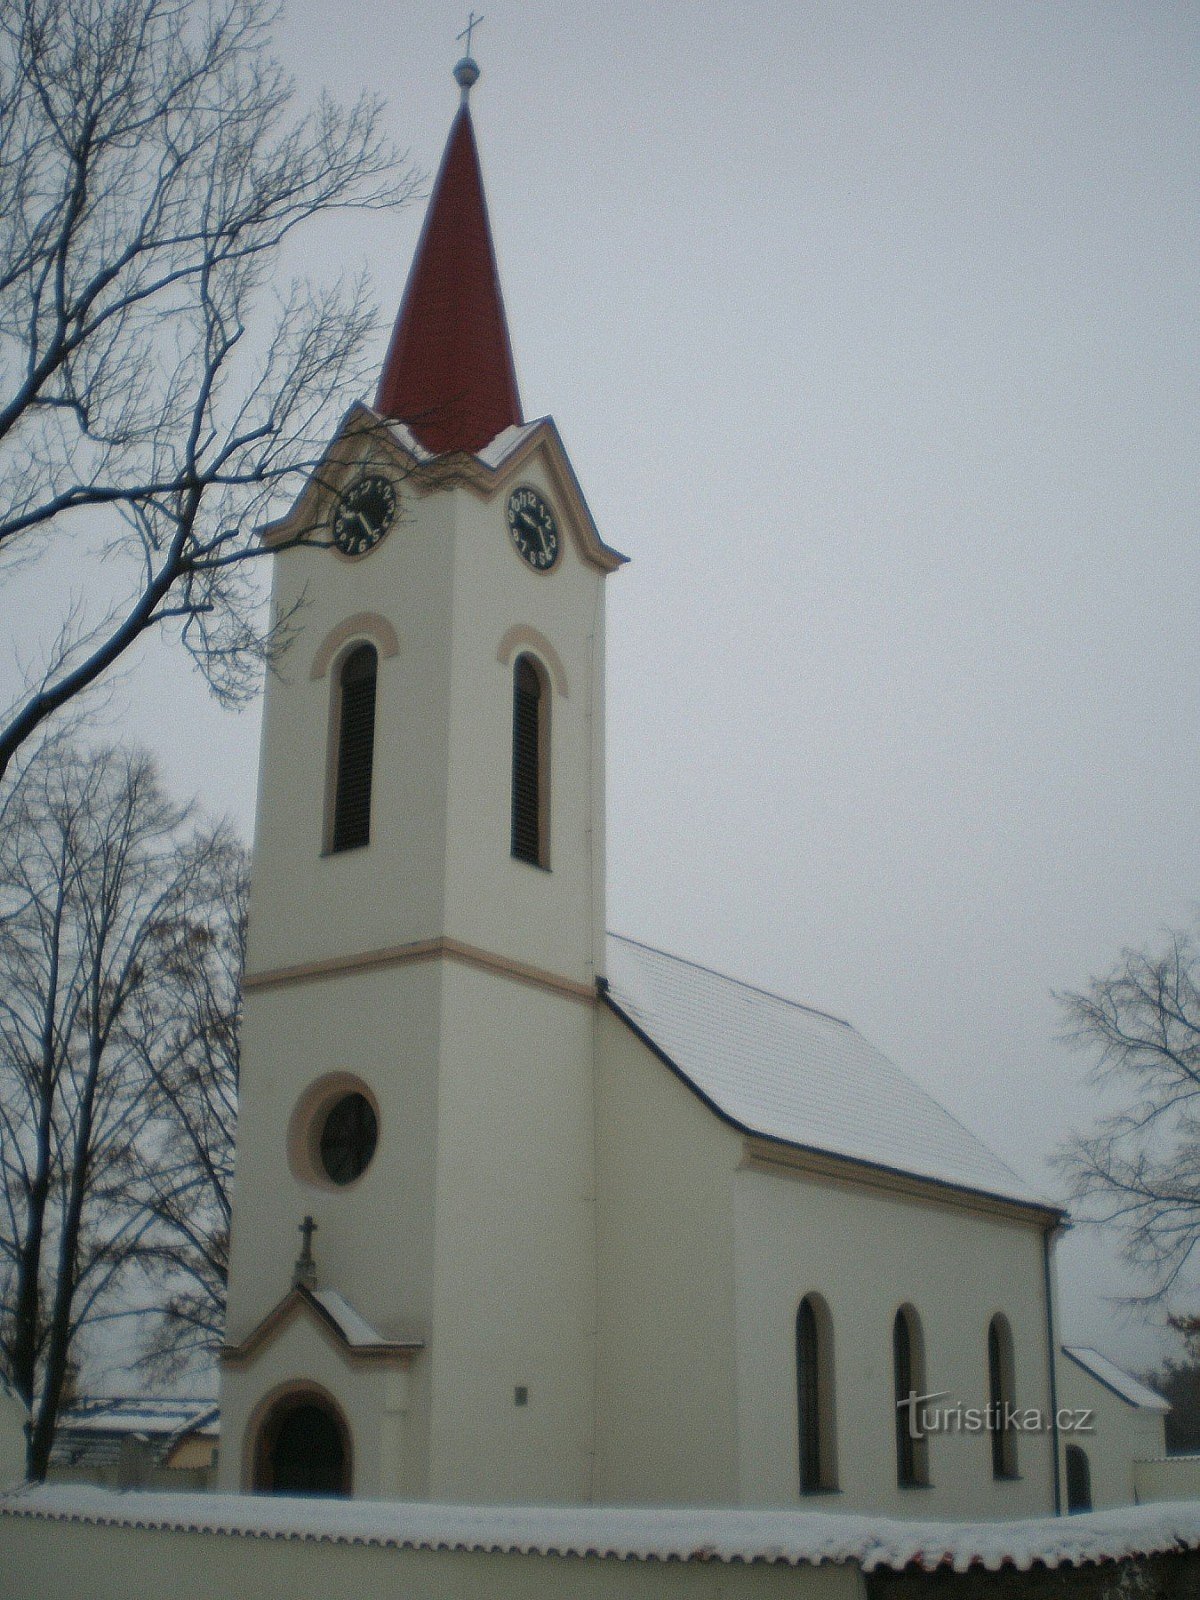 Дубечек - церковь св. Питер